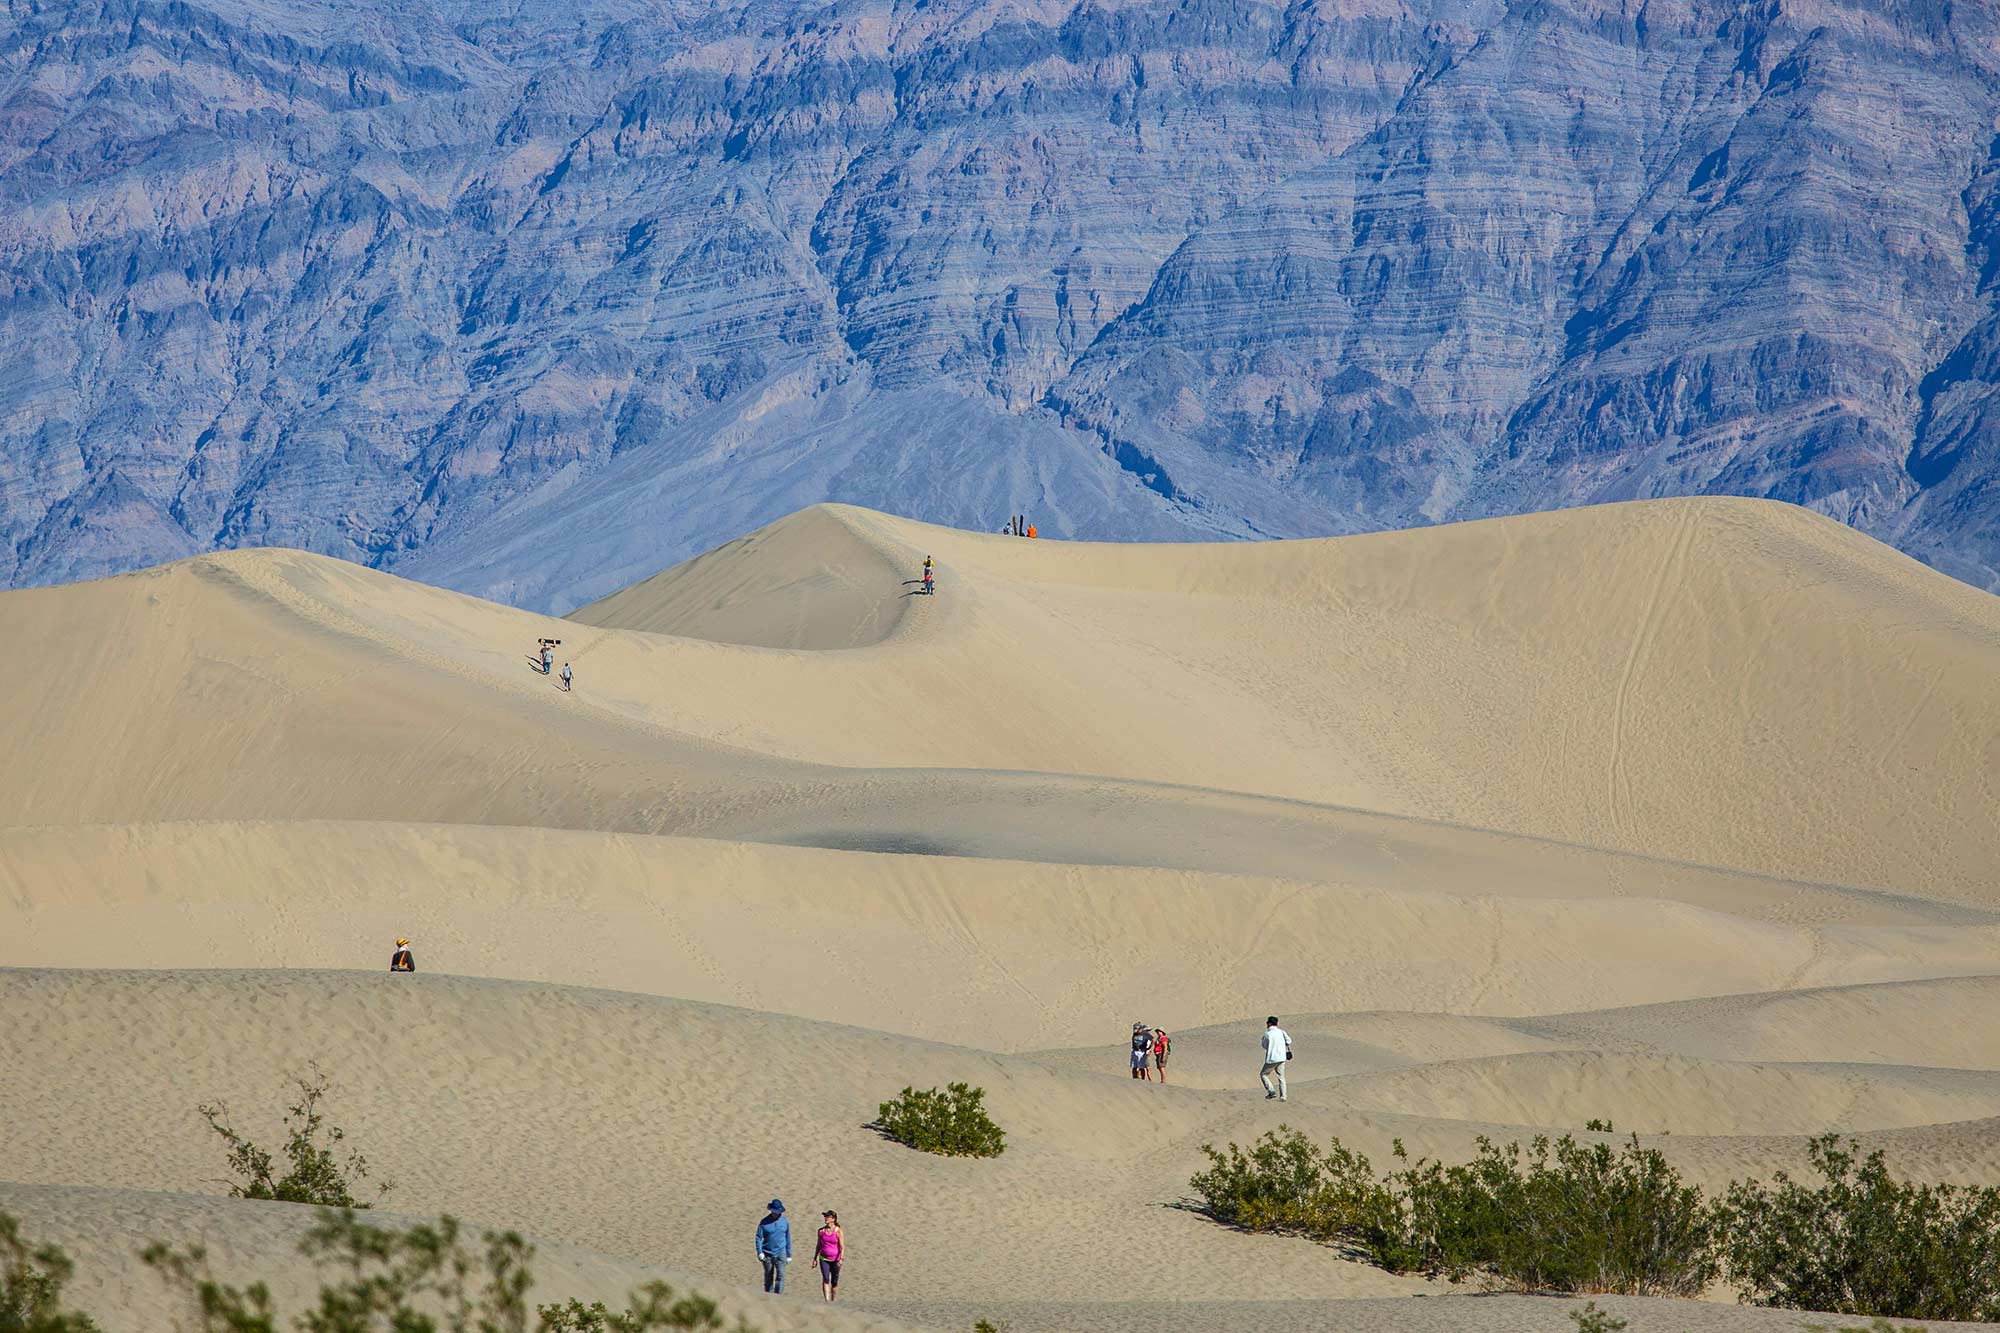 Sand Dunes, Death Valley, CA - 2/21/15